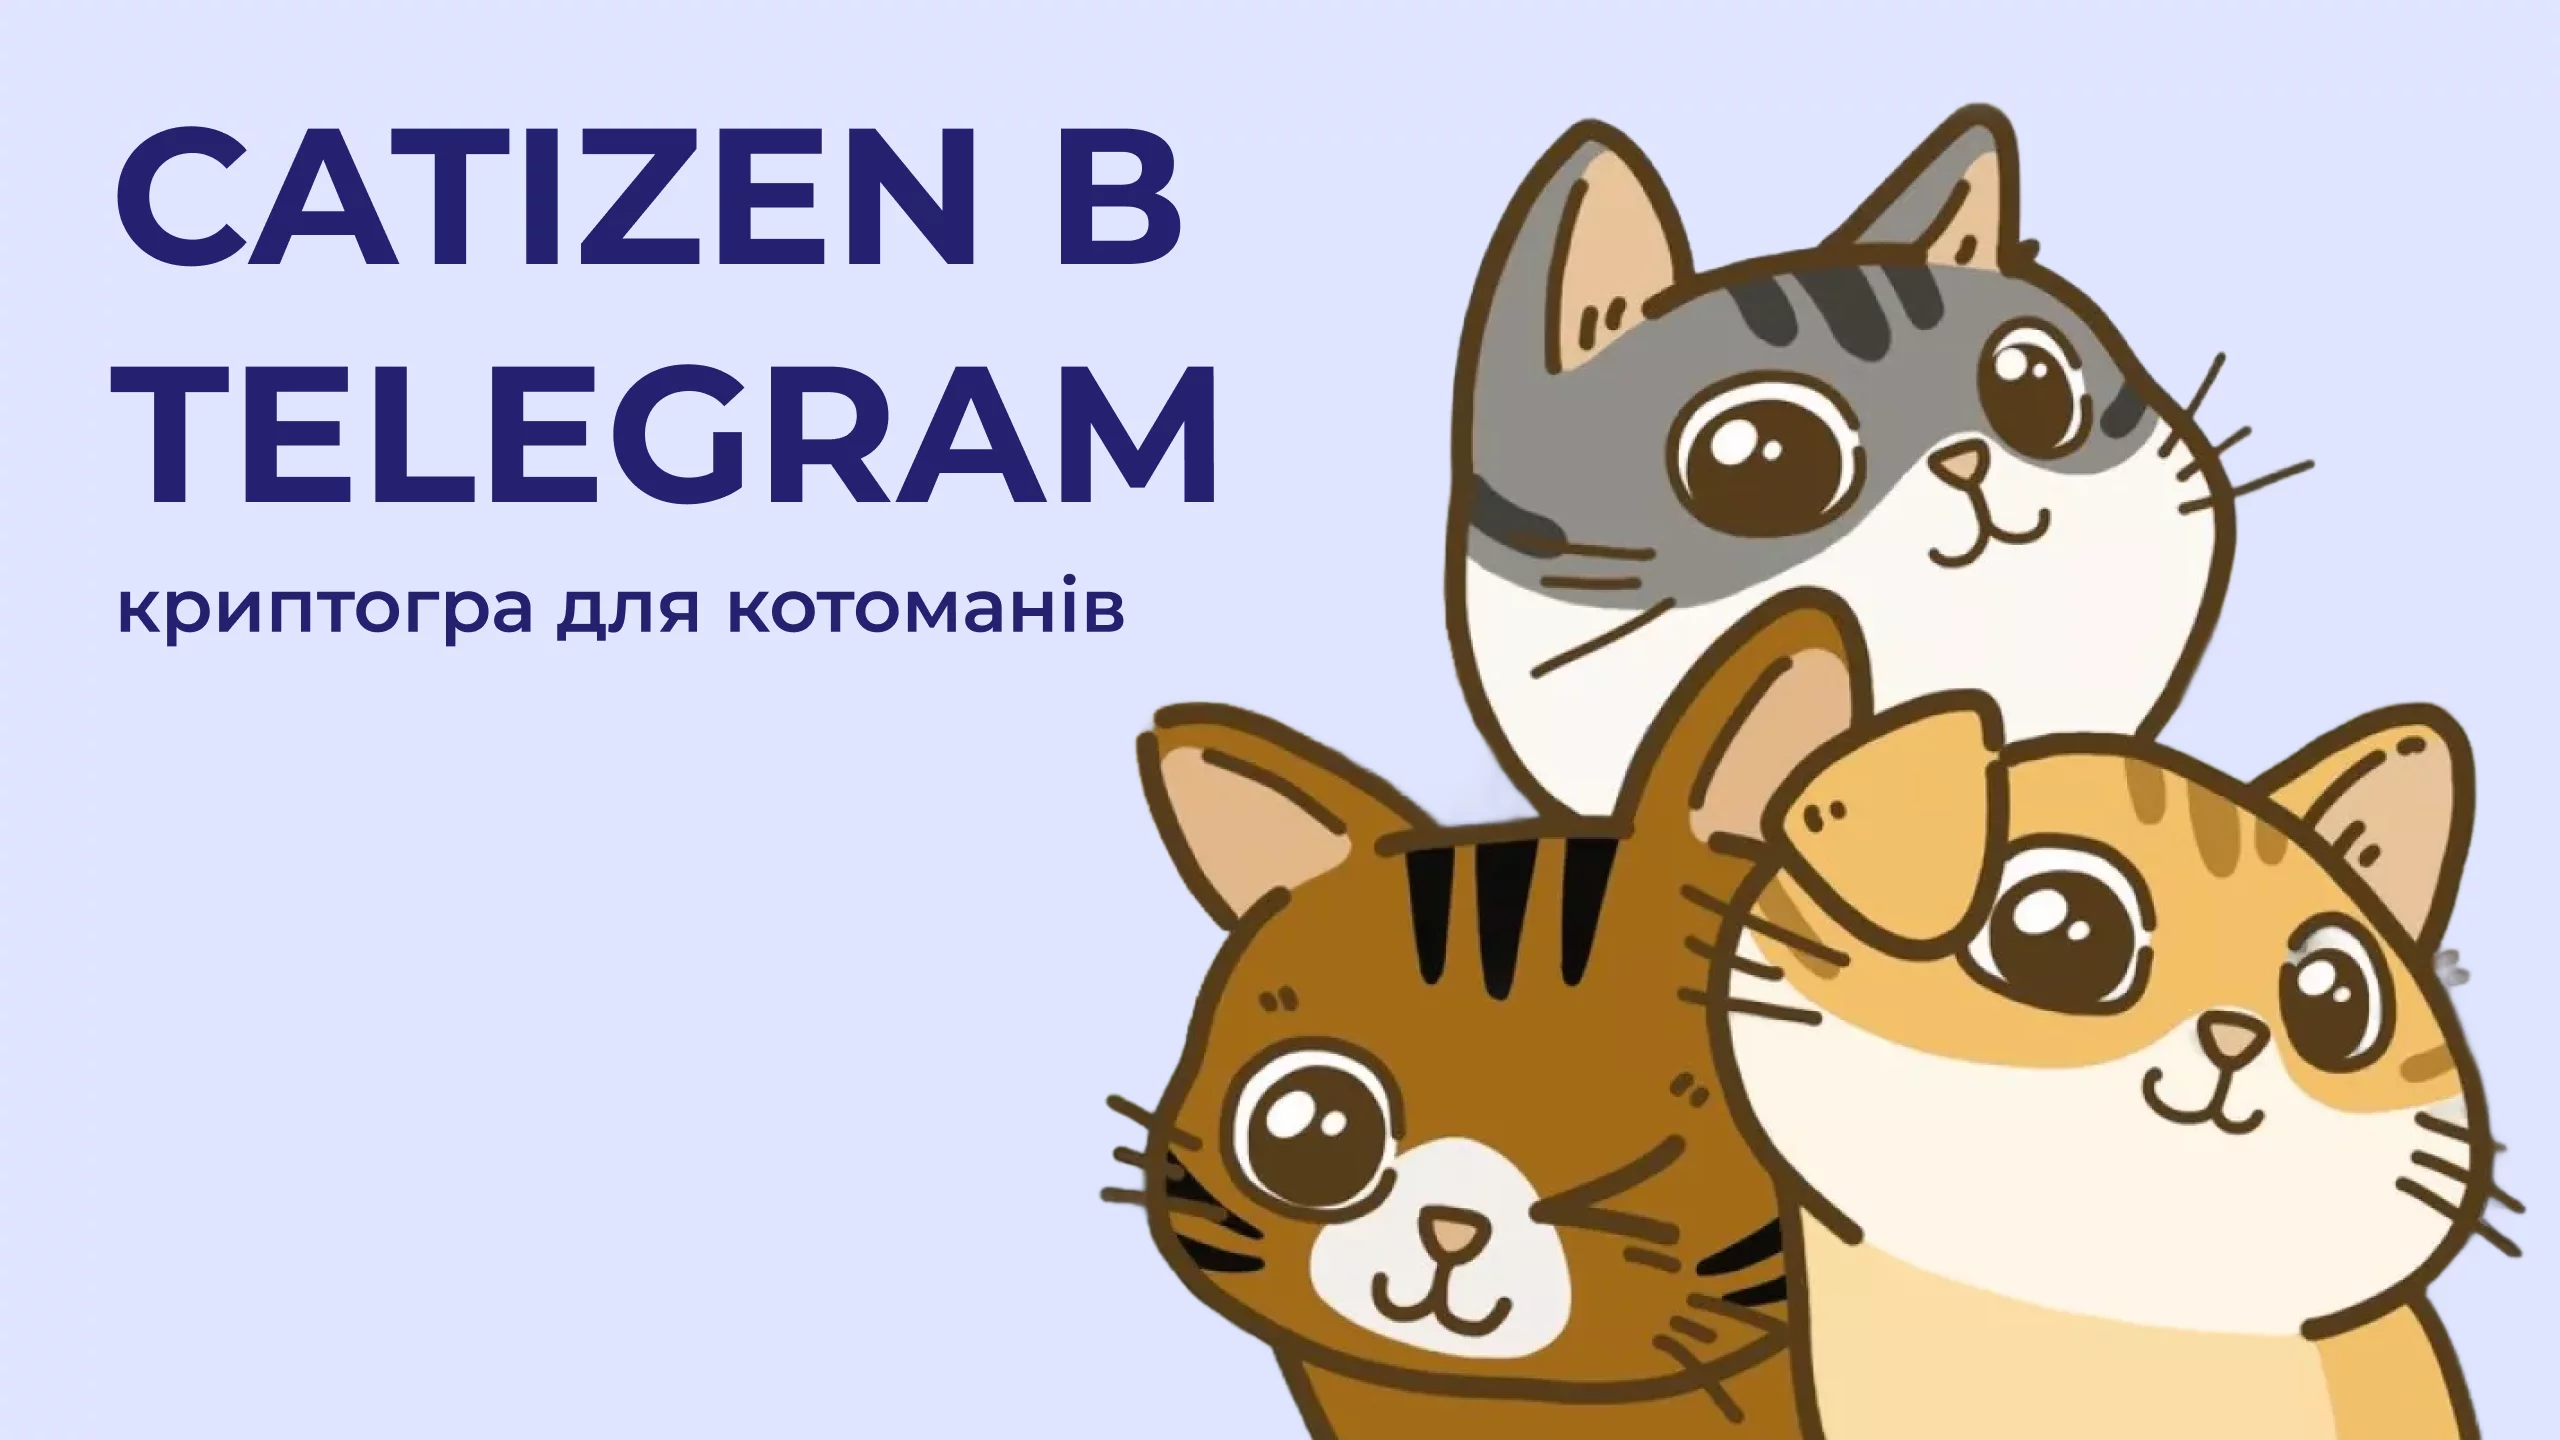 Catizen в Telegram – криптогра для котоманів